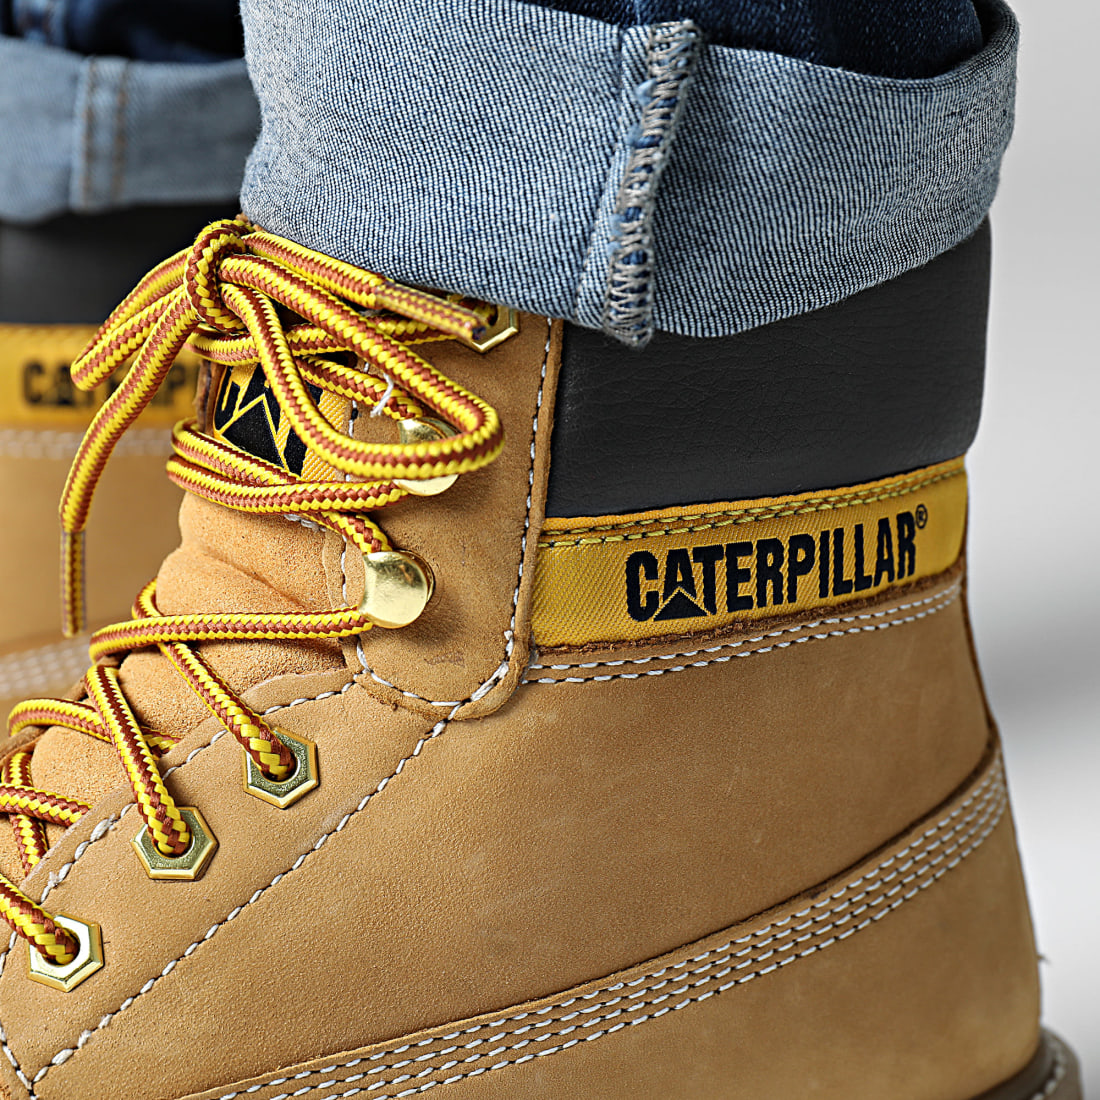 La Caterpillar Colorado boot : une icone de cour de récré